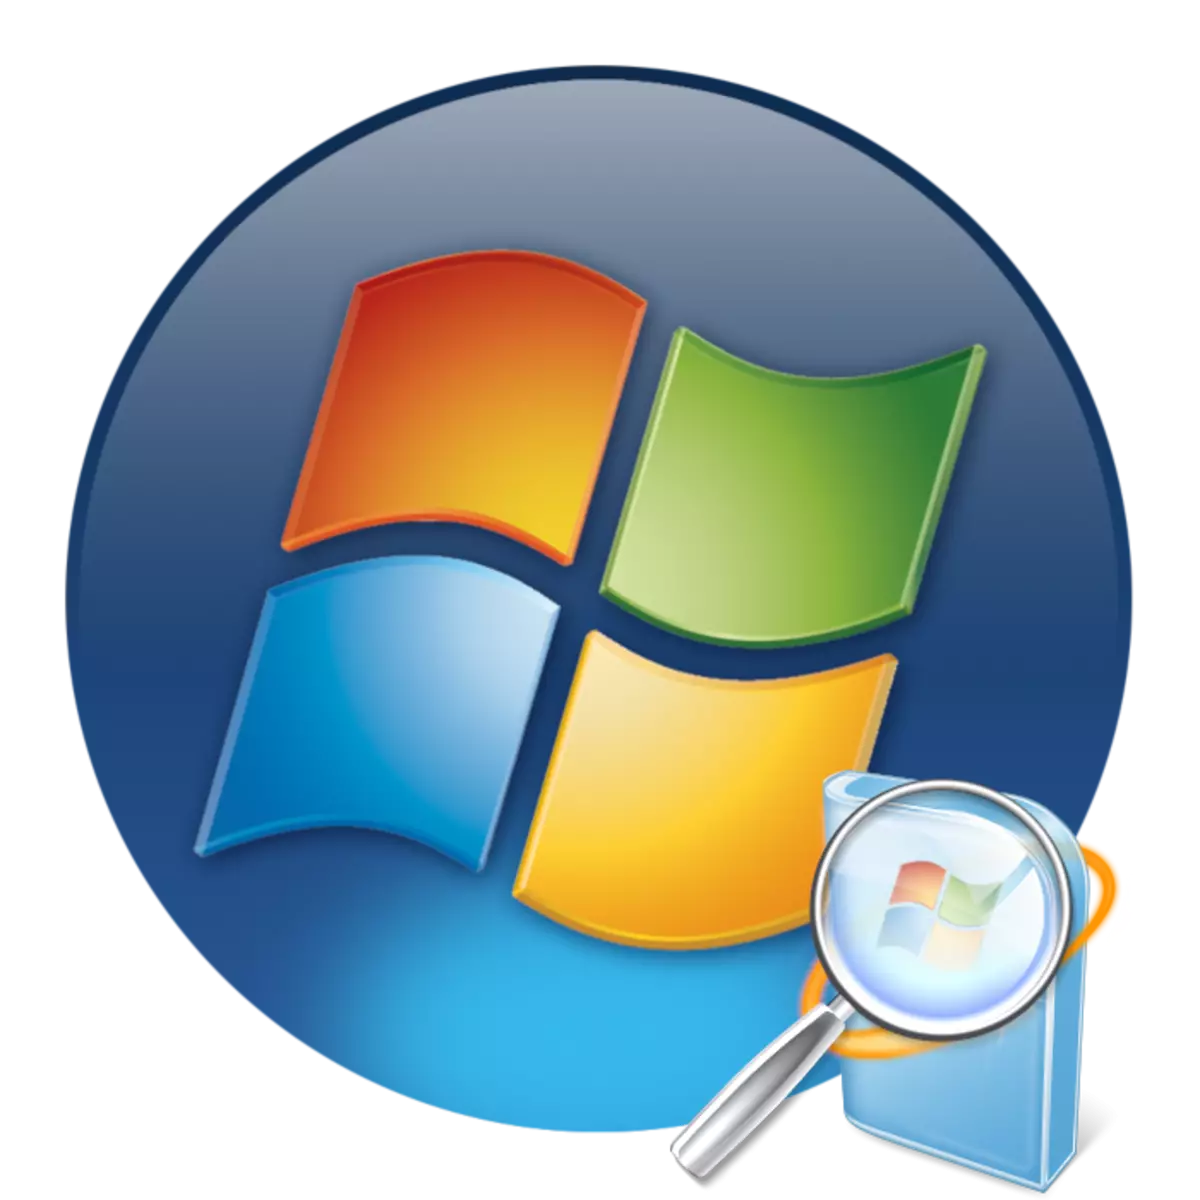 Windows 7 నవీకరణలు ఎక్కడ నిల్వ చేయబడతాయి